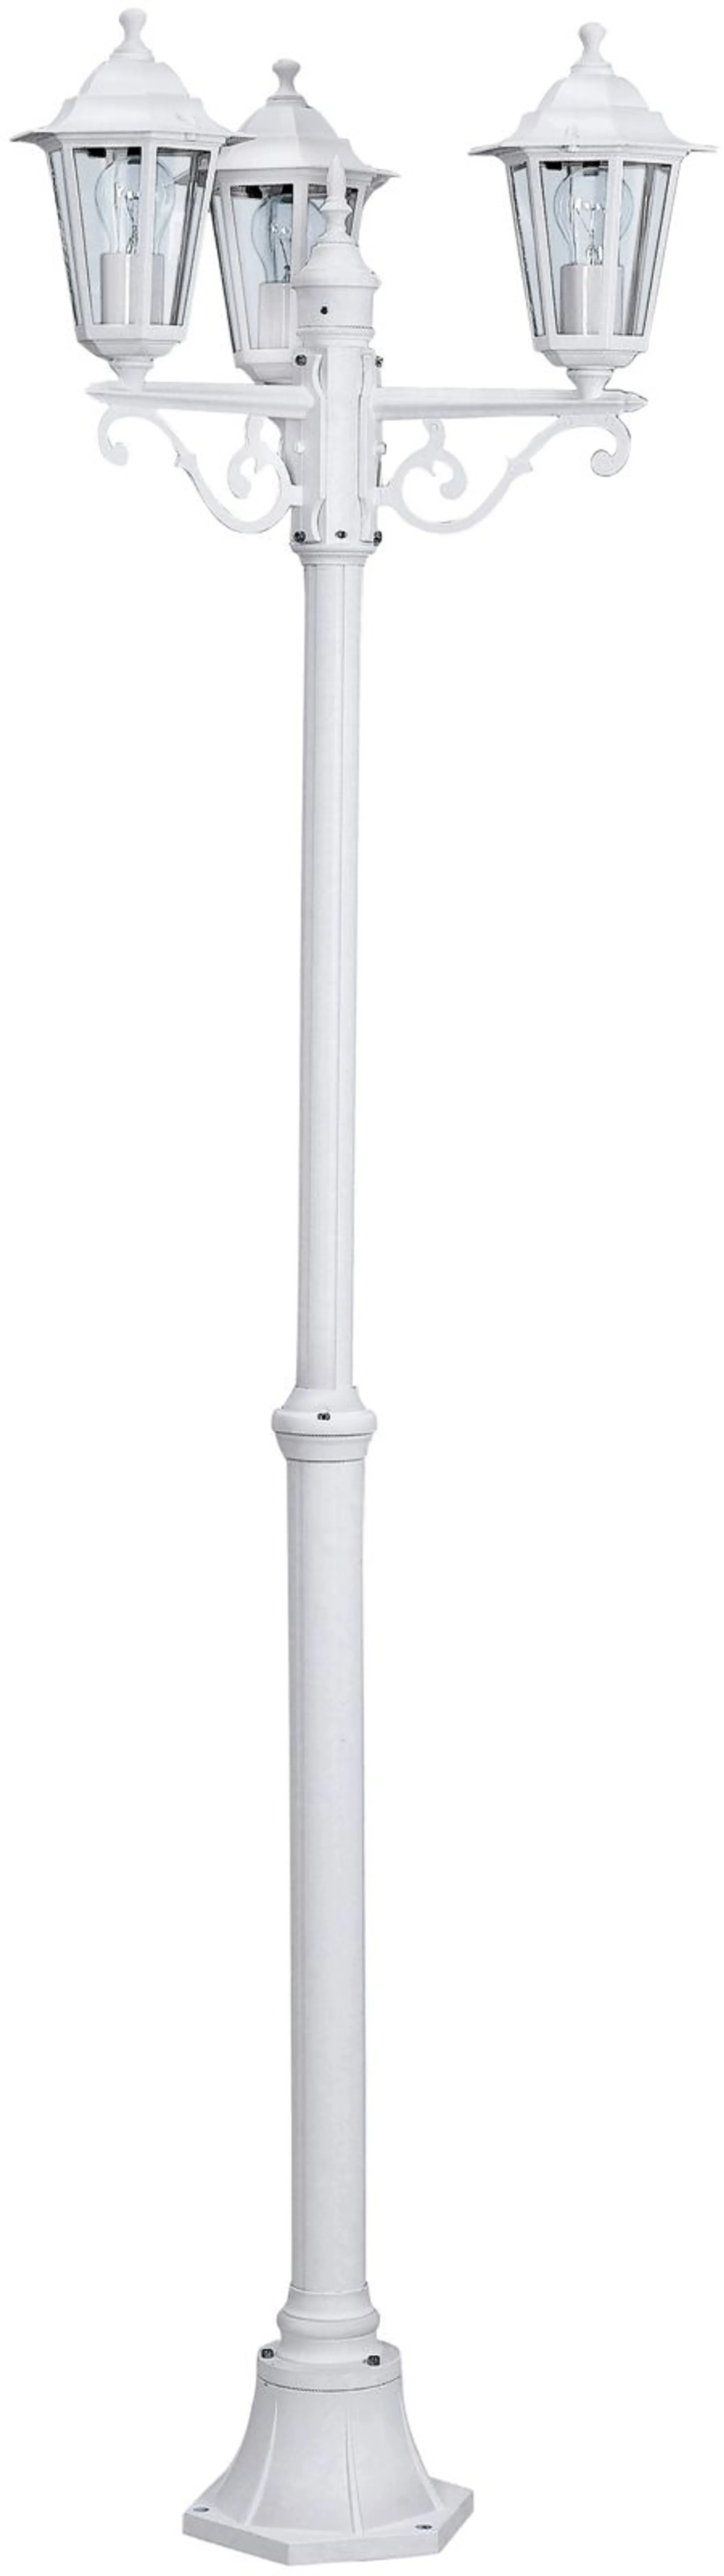 EGLO ulkopylväsvalaisin Laterna 192 cm 3-osainen valkoinen - 1